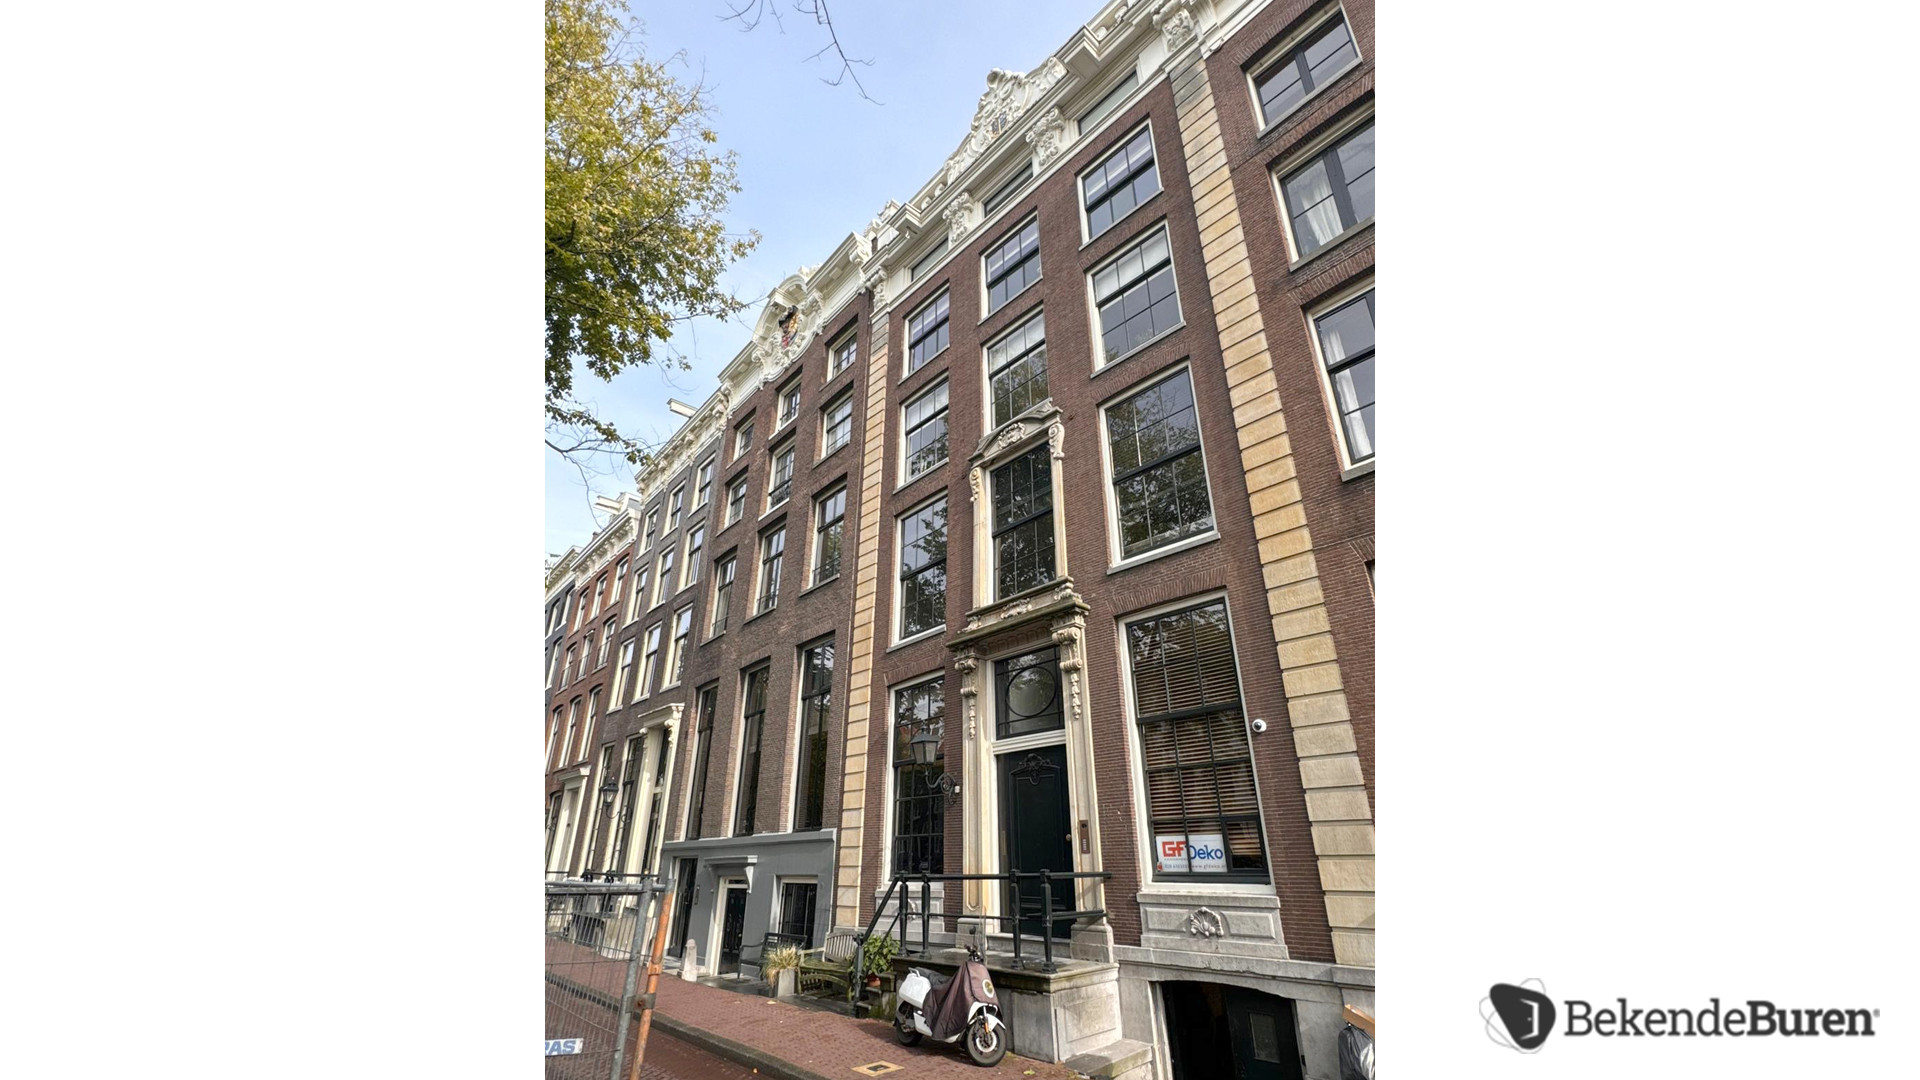 Lieke van Lexmond en Bas van Veggel kopen miljoenenpand aan de Keizersgracht in Amsterdam. Zie foto's 7